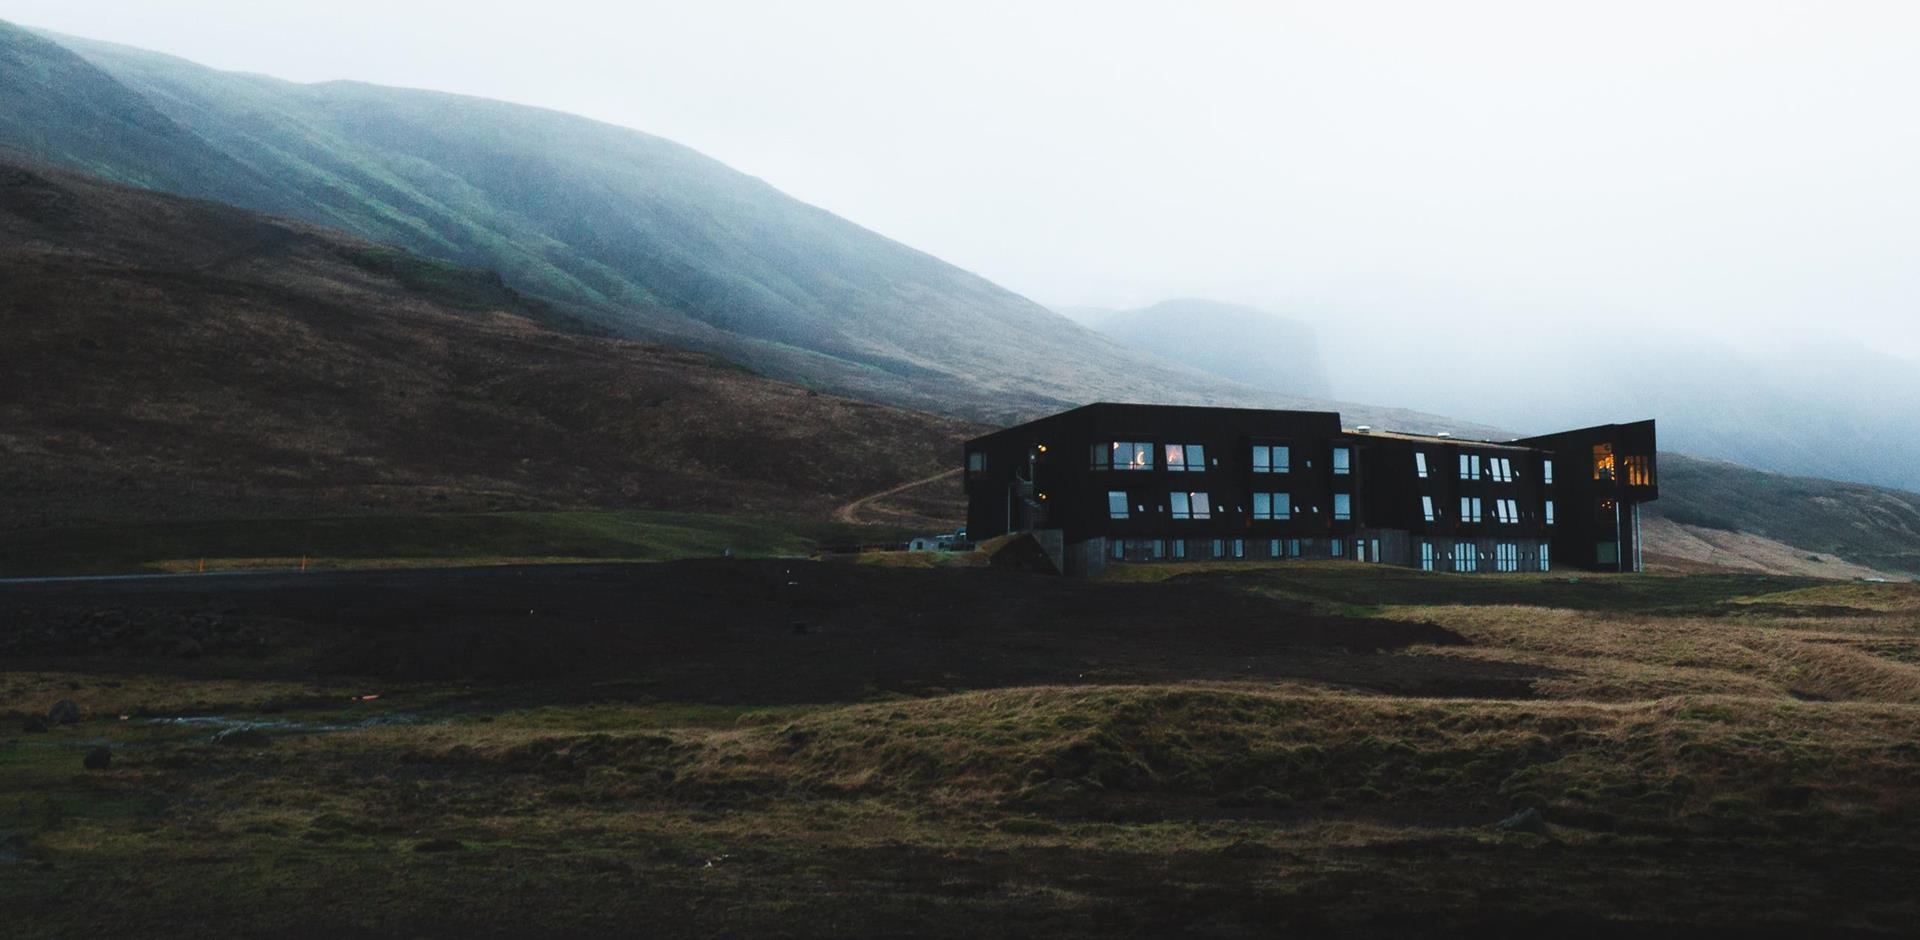 Accommodation, Iceland, A&K